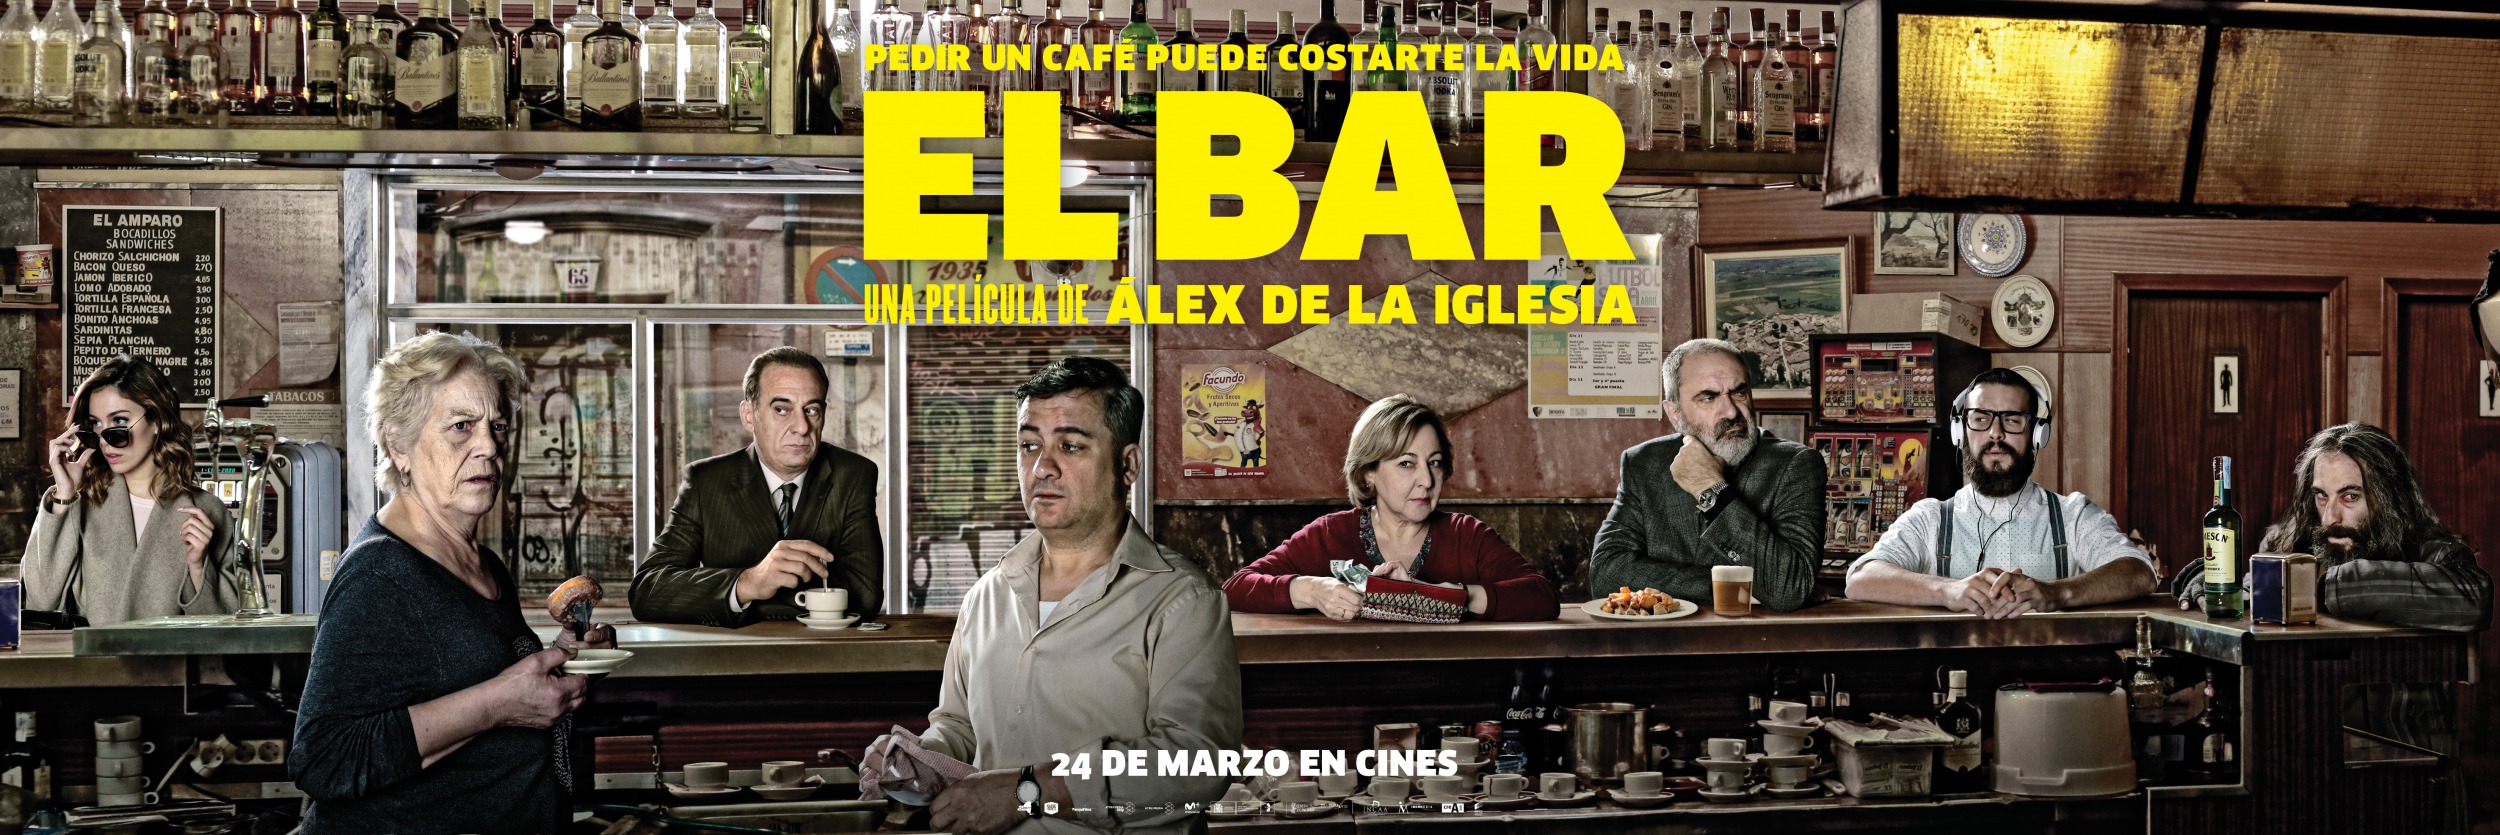 Mega Sized Movie Poster Image for El bar (#11 of 11)